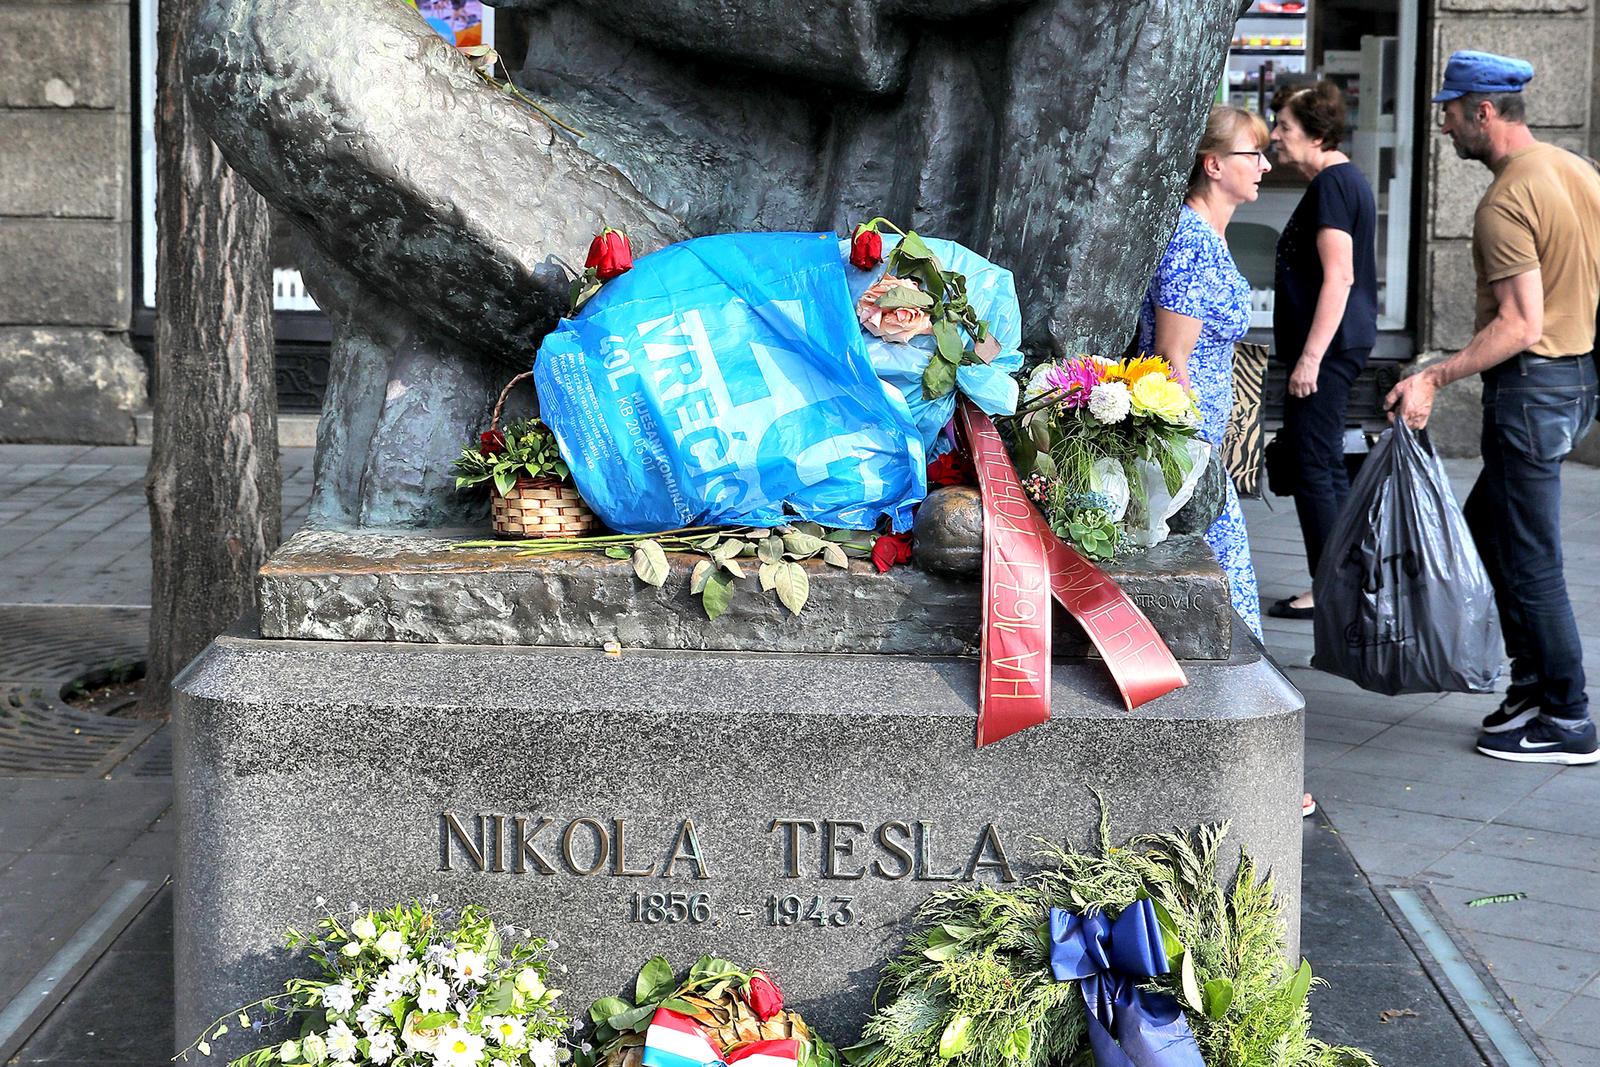 Nije poznato je li riječ o poruci mržnje prema Tesli ili svojevrsnoj kritici zagrebačkoj vlasti i njenom načinu gospodarenja otpadom 